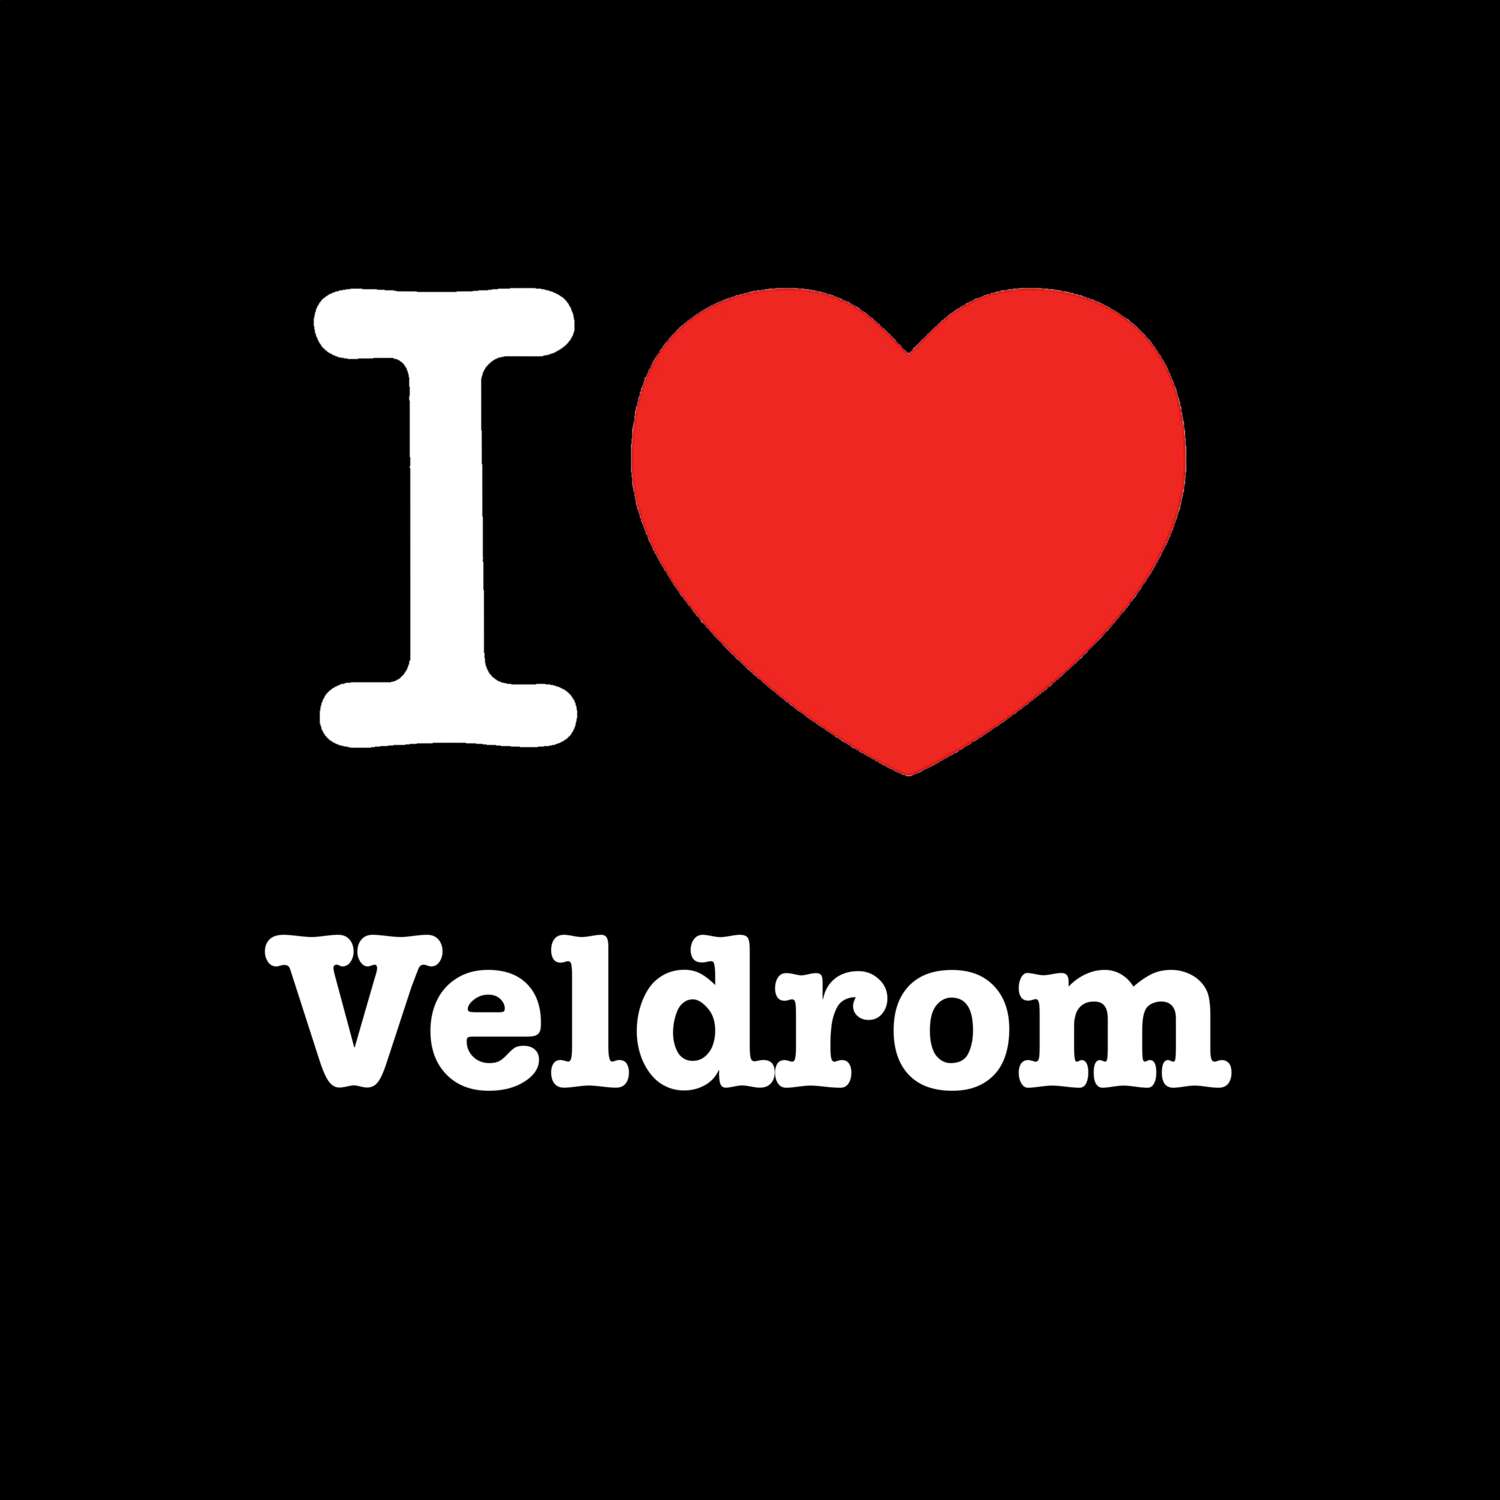 Veldrom T-Shirt »I love«